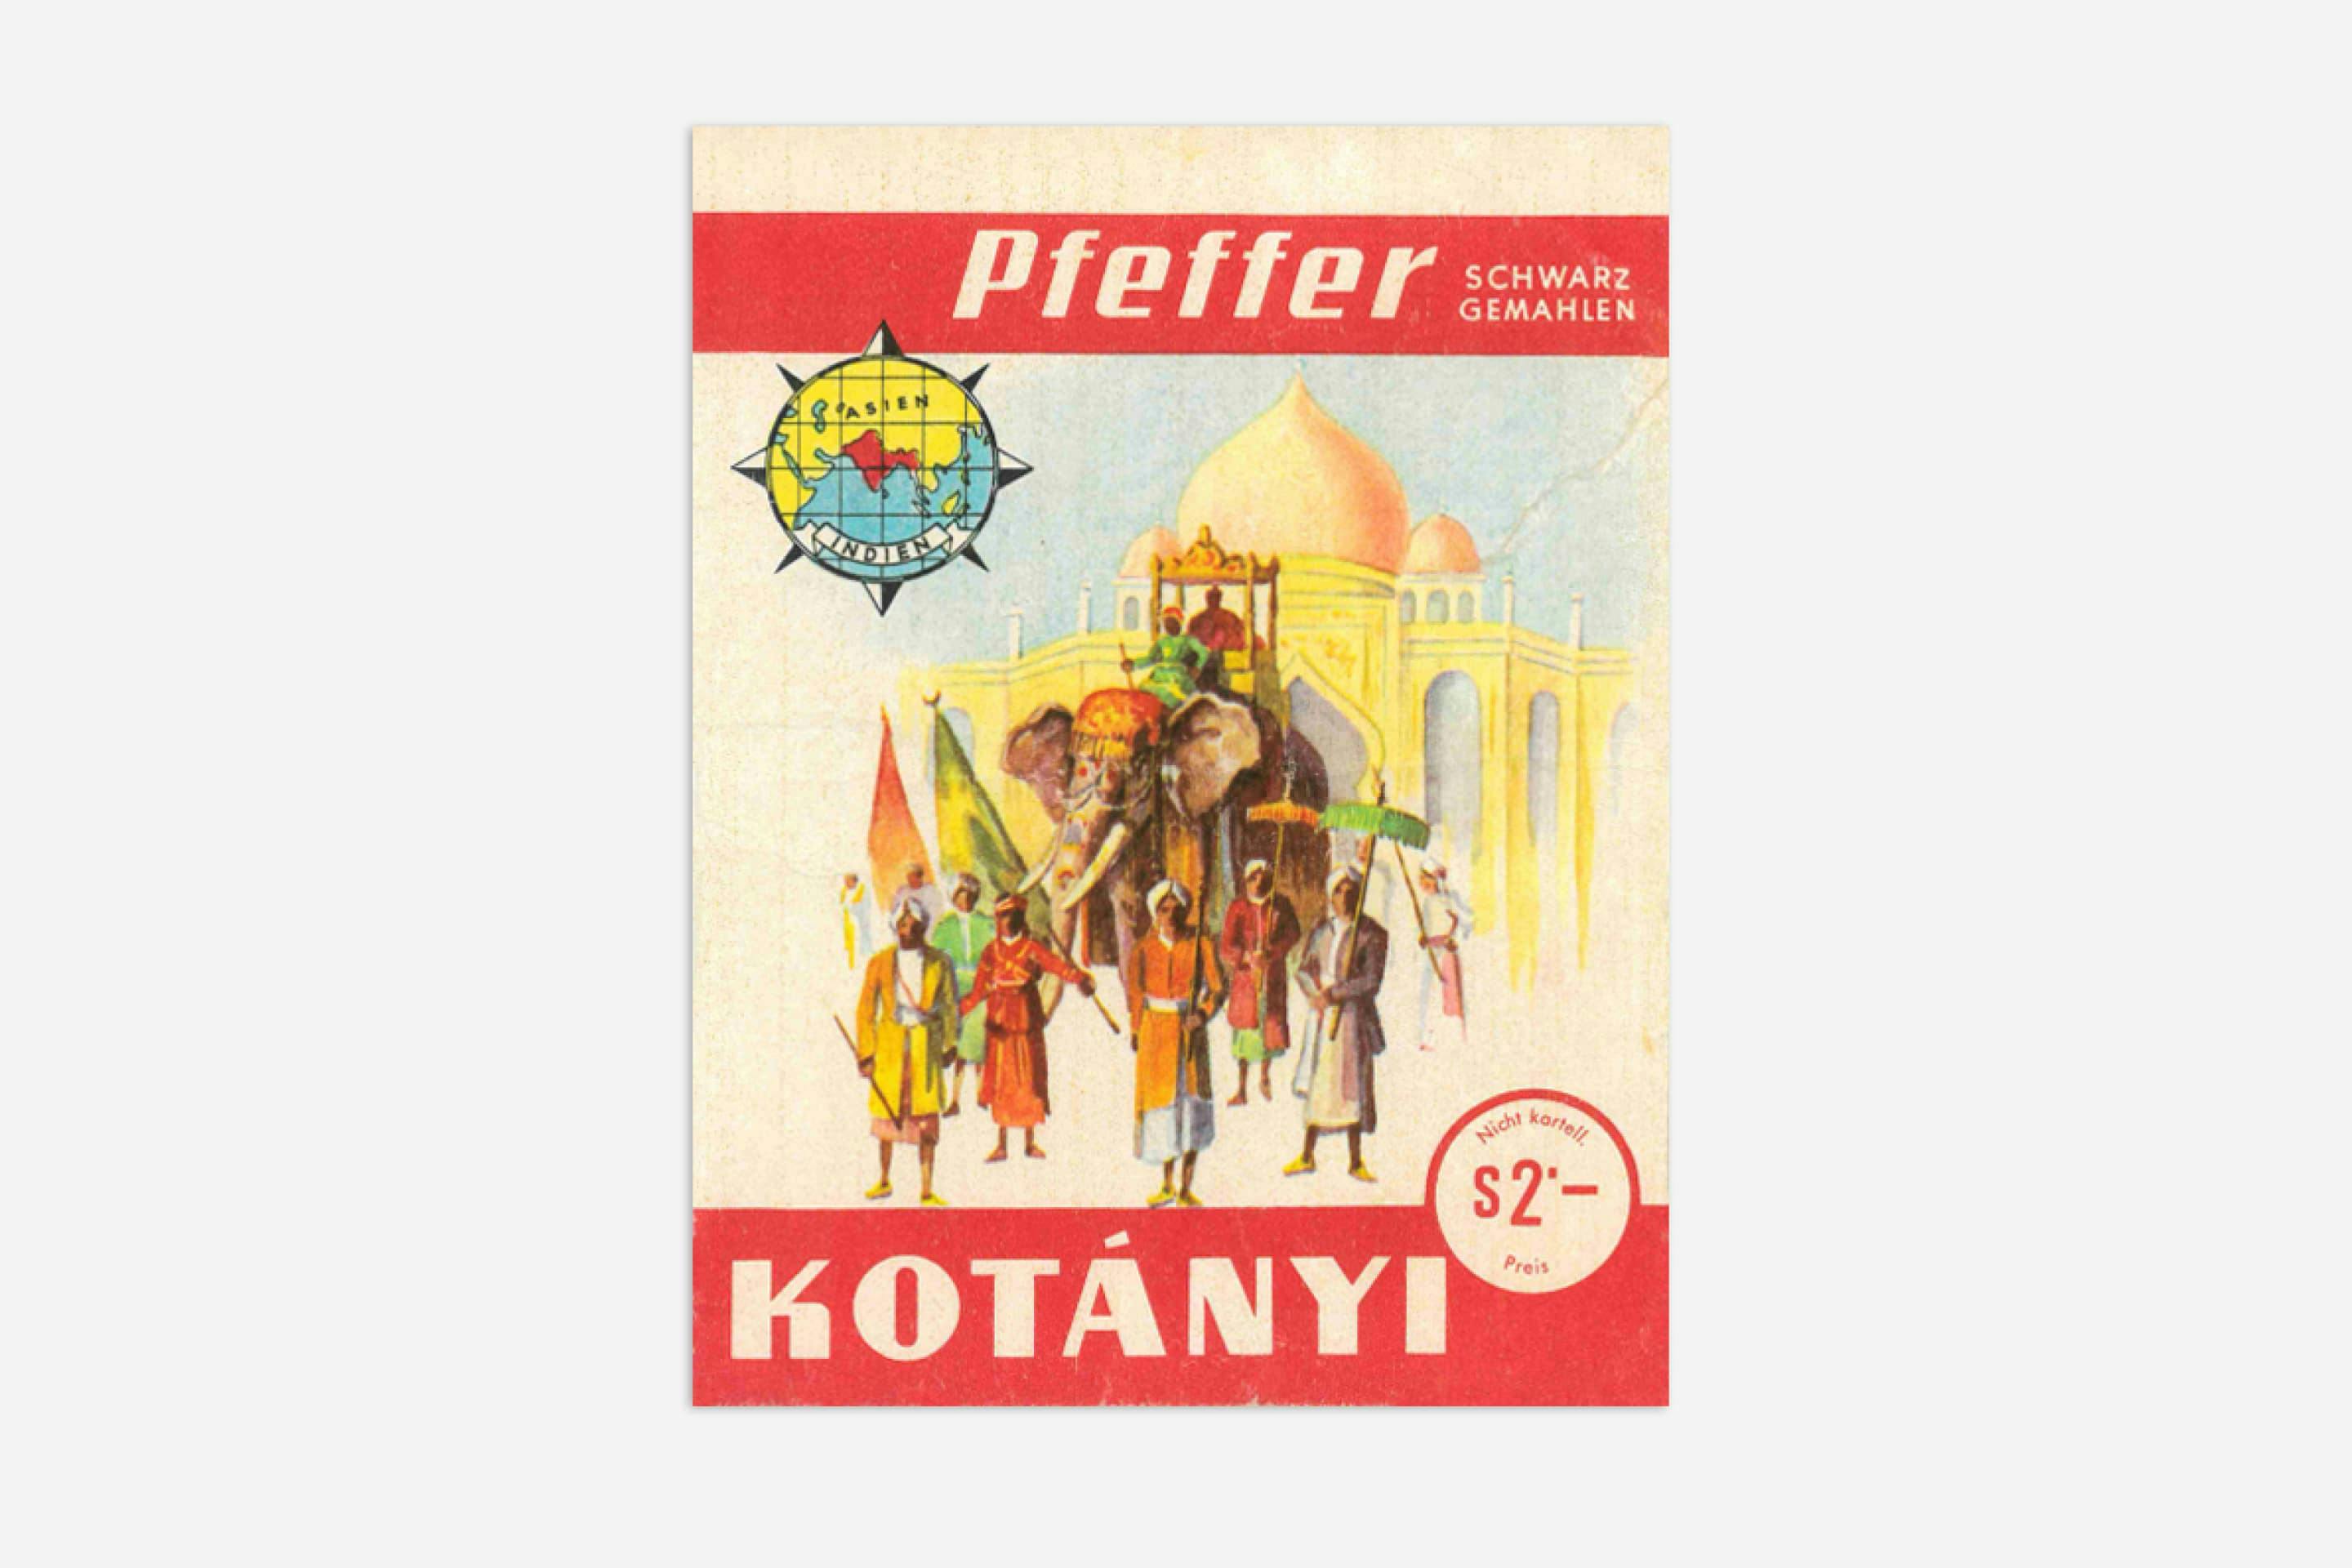 Kotányi pepper sachet from 1970.